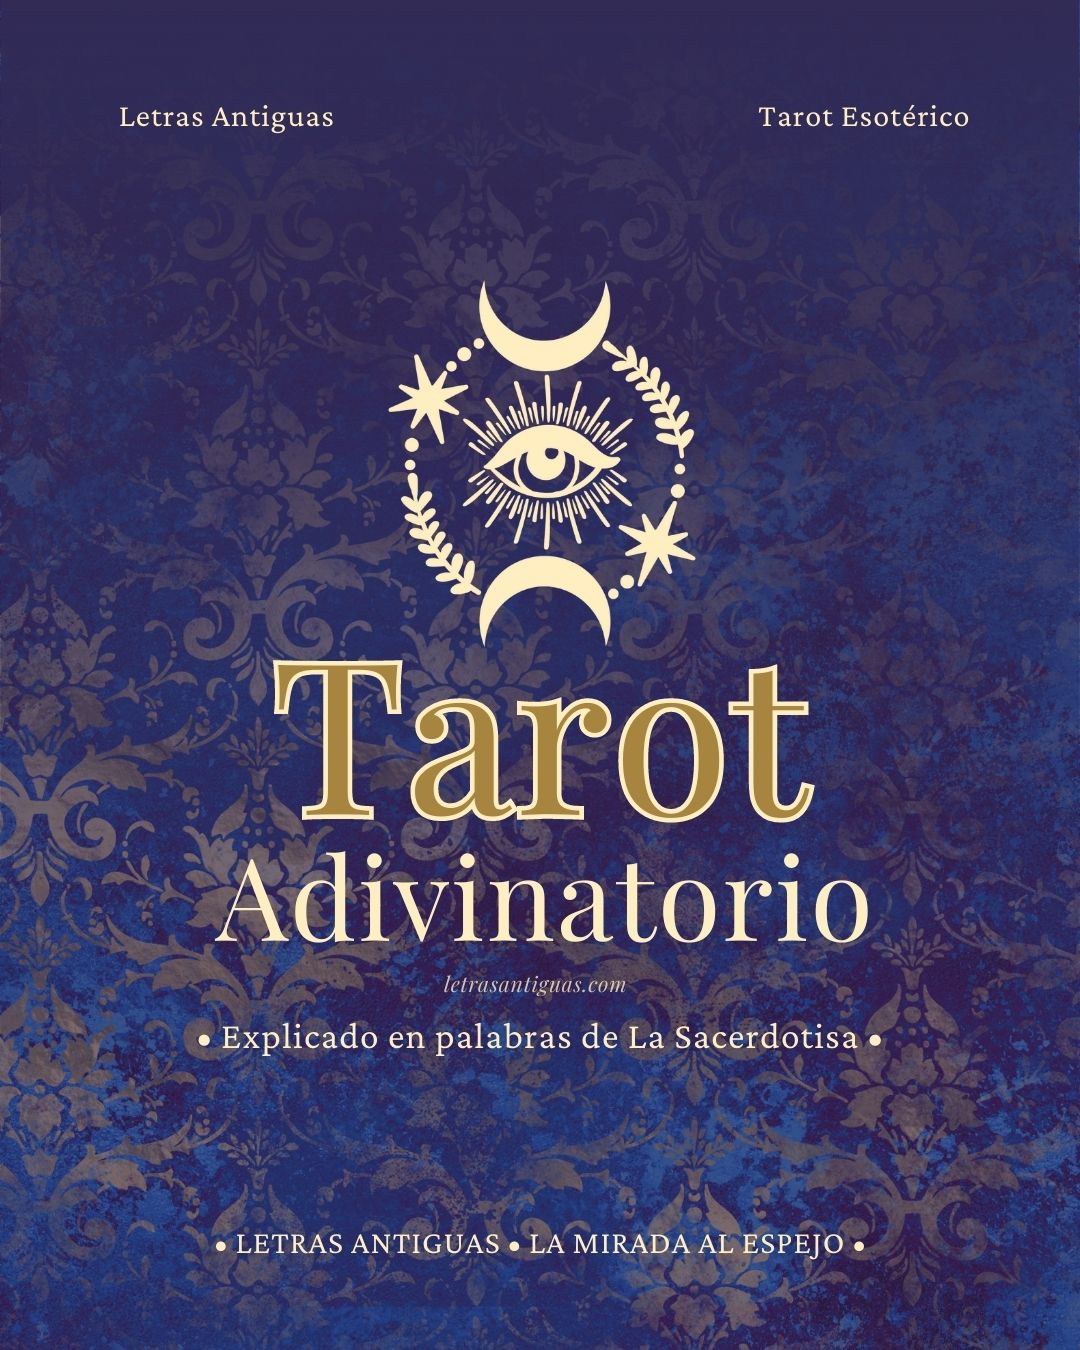 ¿Qué es el Tarot Adivinatorio?